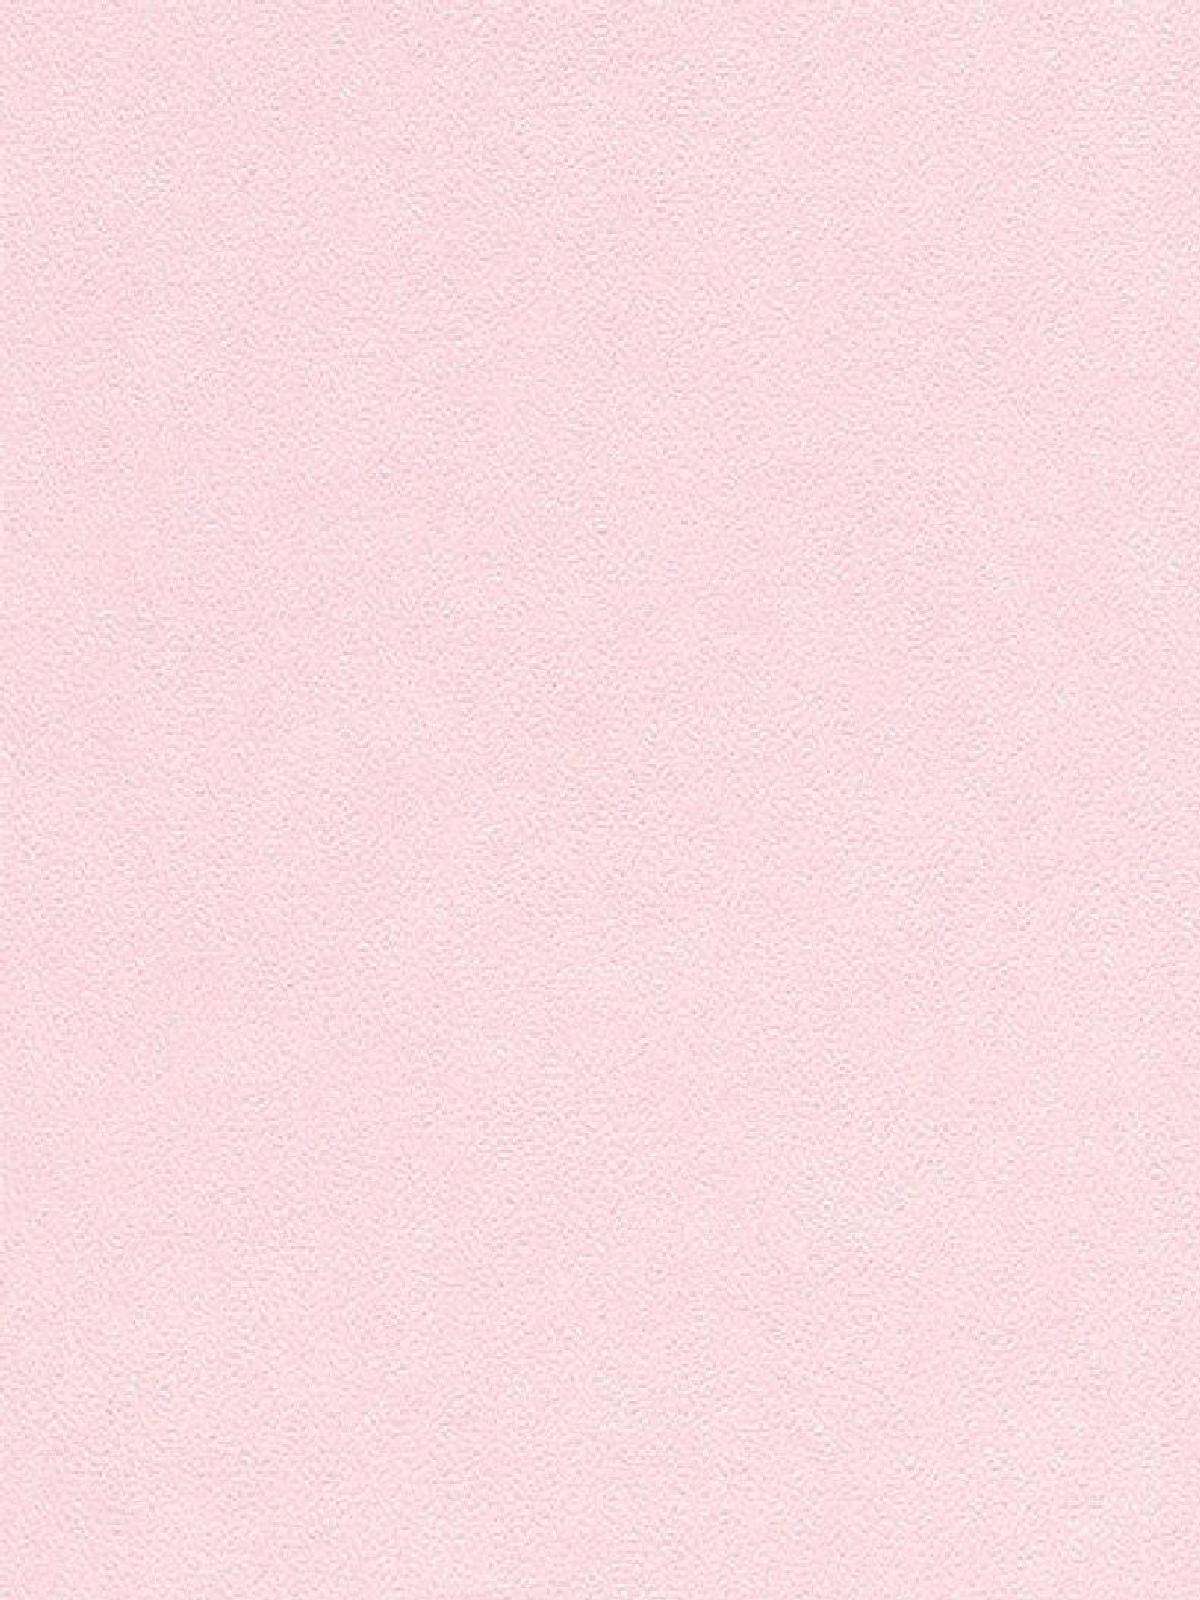 1200x1600 Hình nền màu hồng nhẹ nhàng